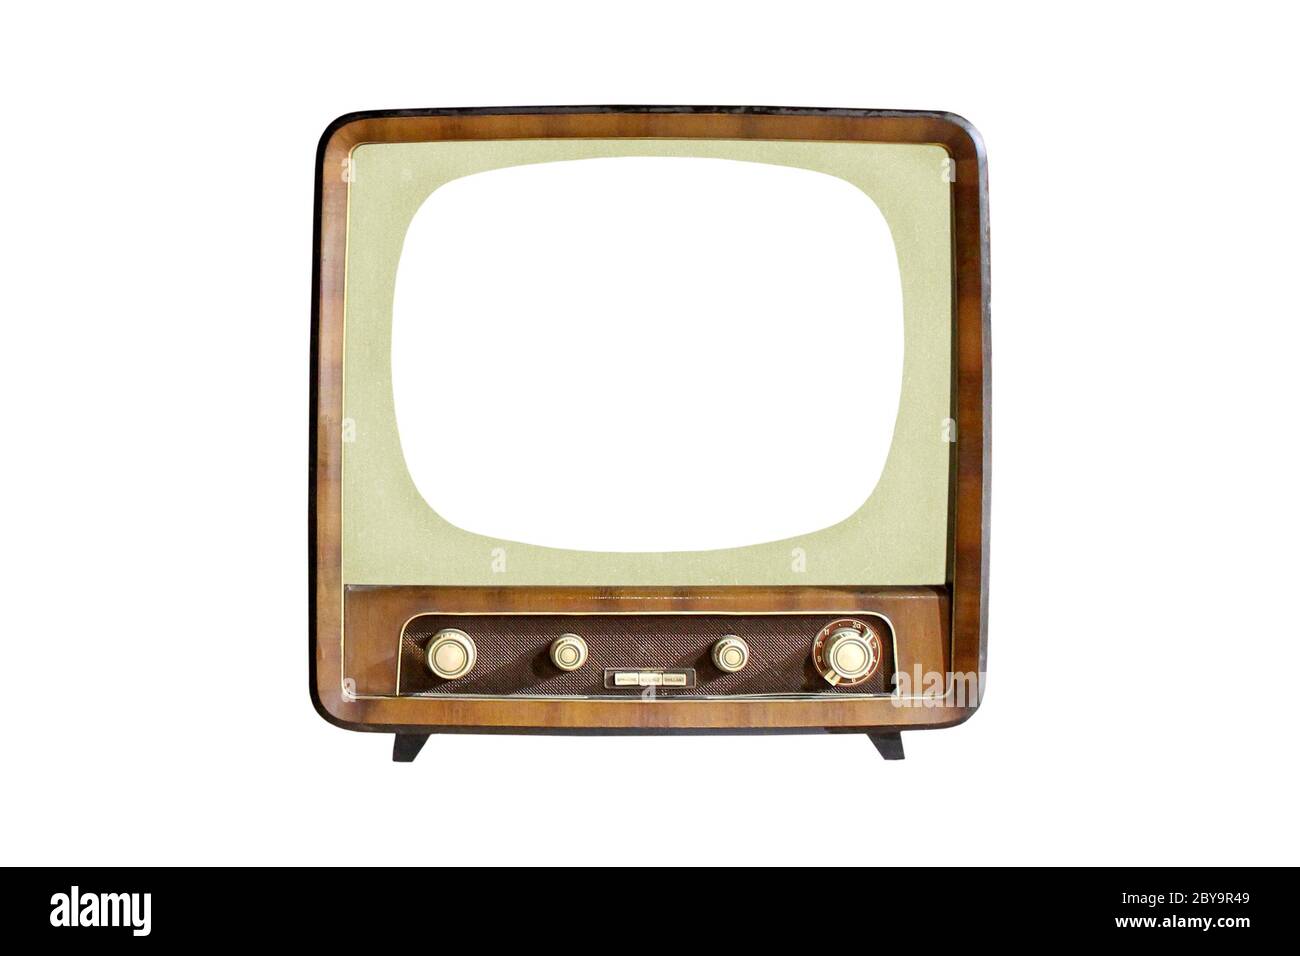 Televisore Vintage CRT con schermo vuoto isolato su sfondo bianco, tecnologia televisiva analogica retrò Foto Stock